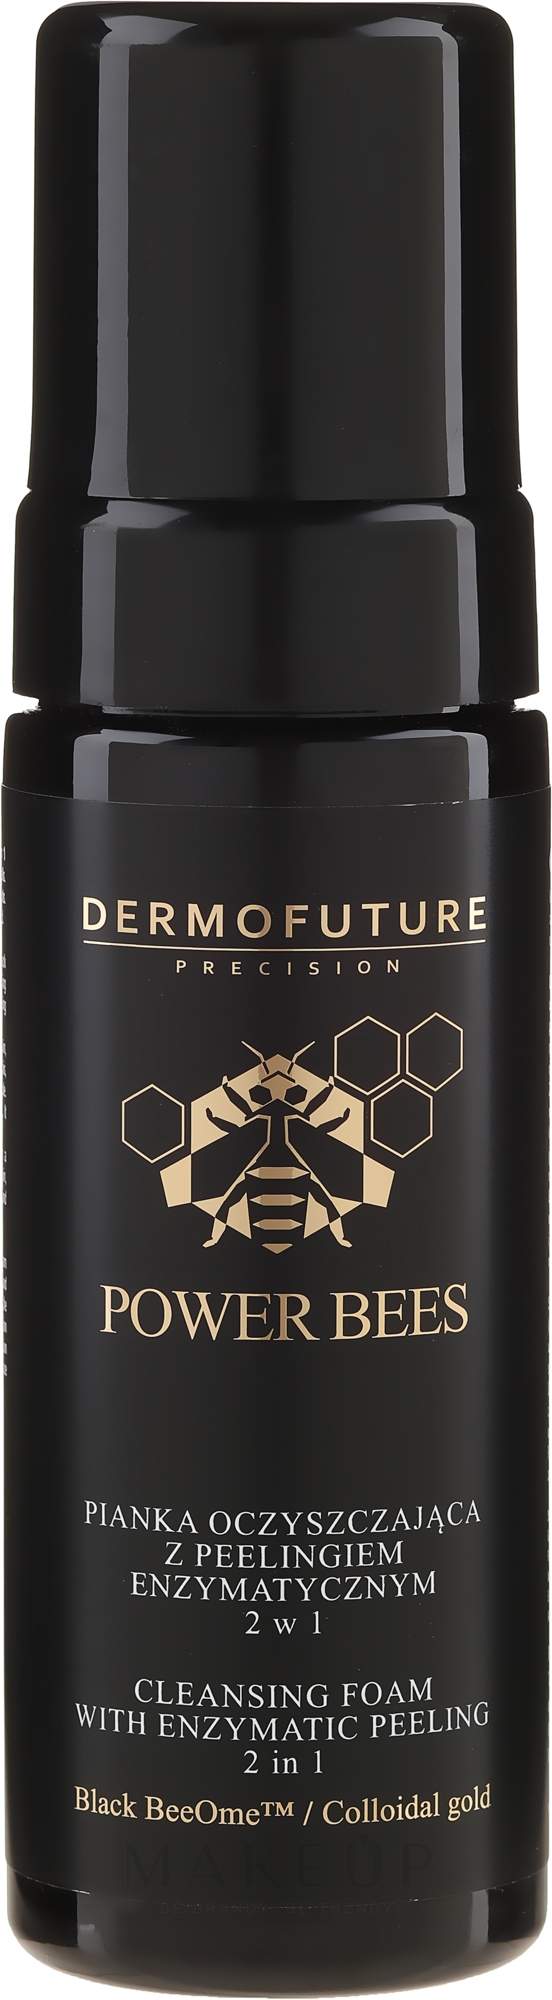 Gesichtsreinigungsschaum mit Enzympeeling - Dermofuture Power Bees Cleansing Foam 2in1 — Foto 150 ml